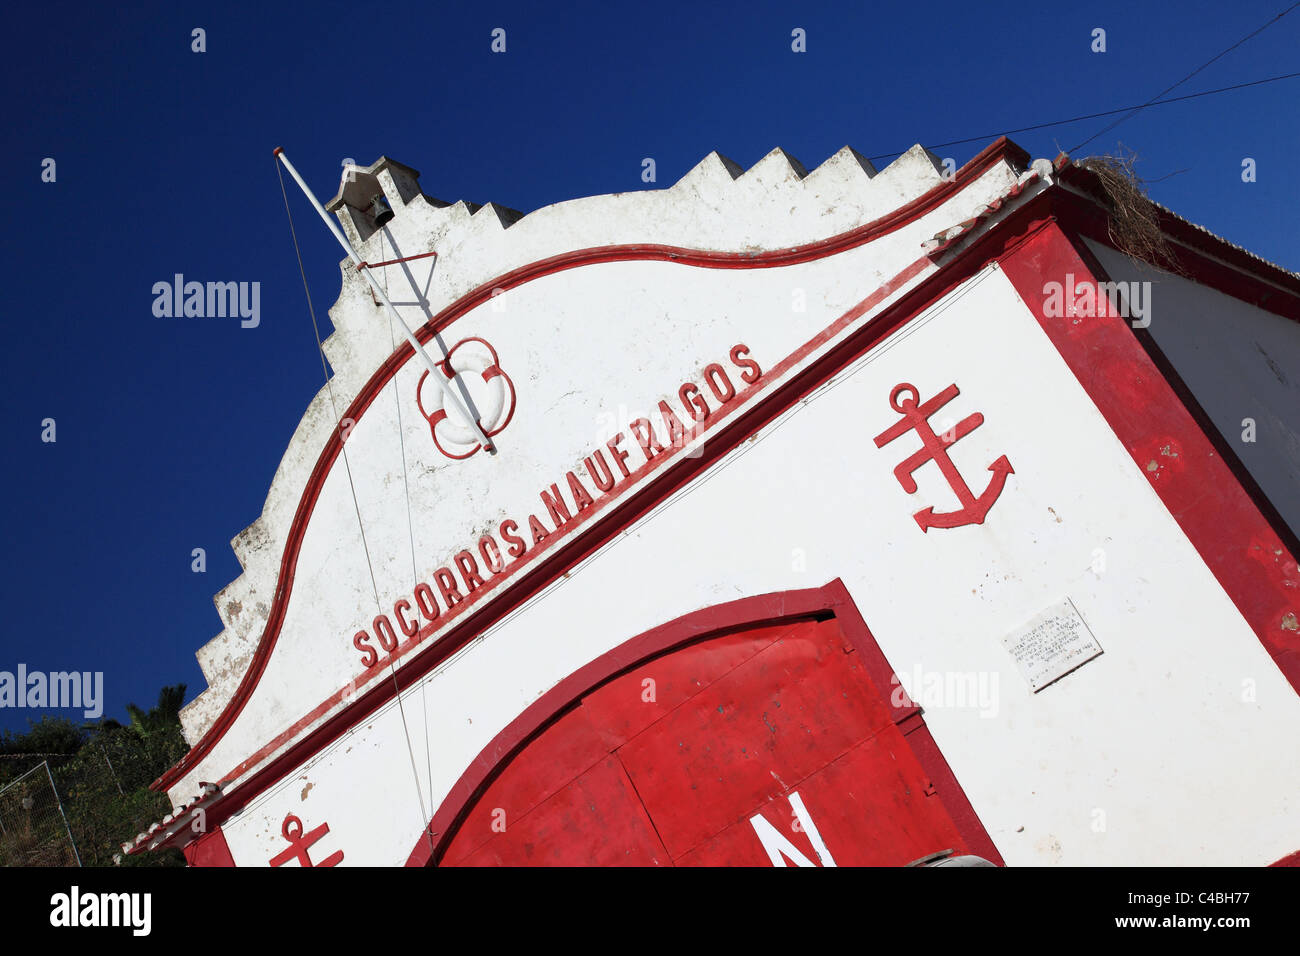 Lifeboat station in Alvor Algarve Portugal Stock Photo